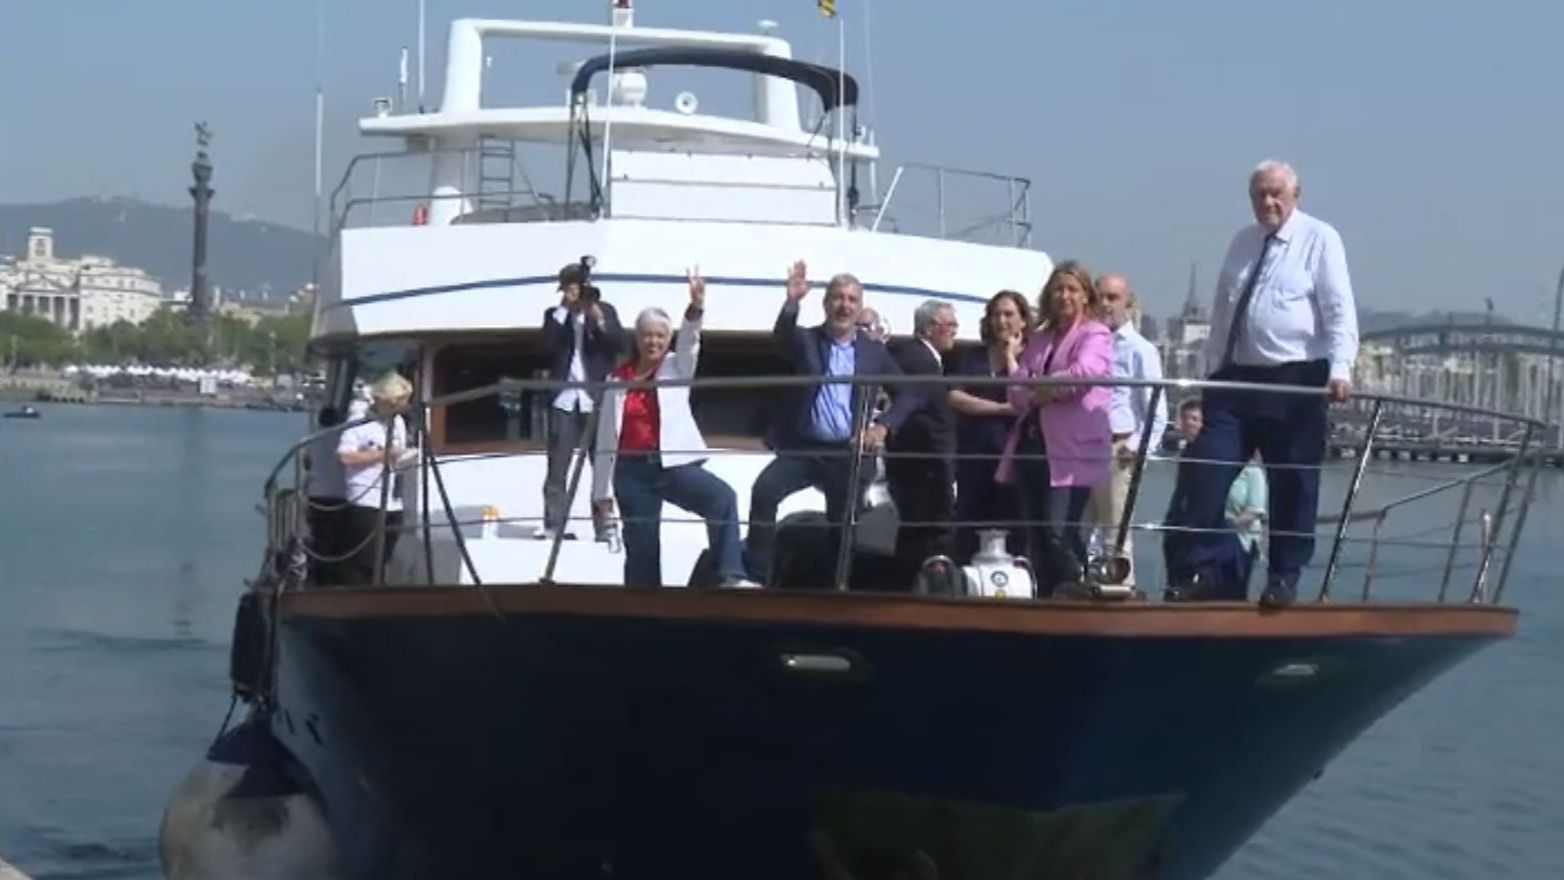 Los candidatos a la alcaldía de Barcelona pasan la jornada de reflexión con un paseo en barco